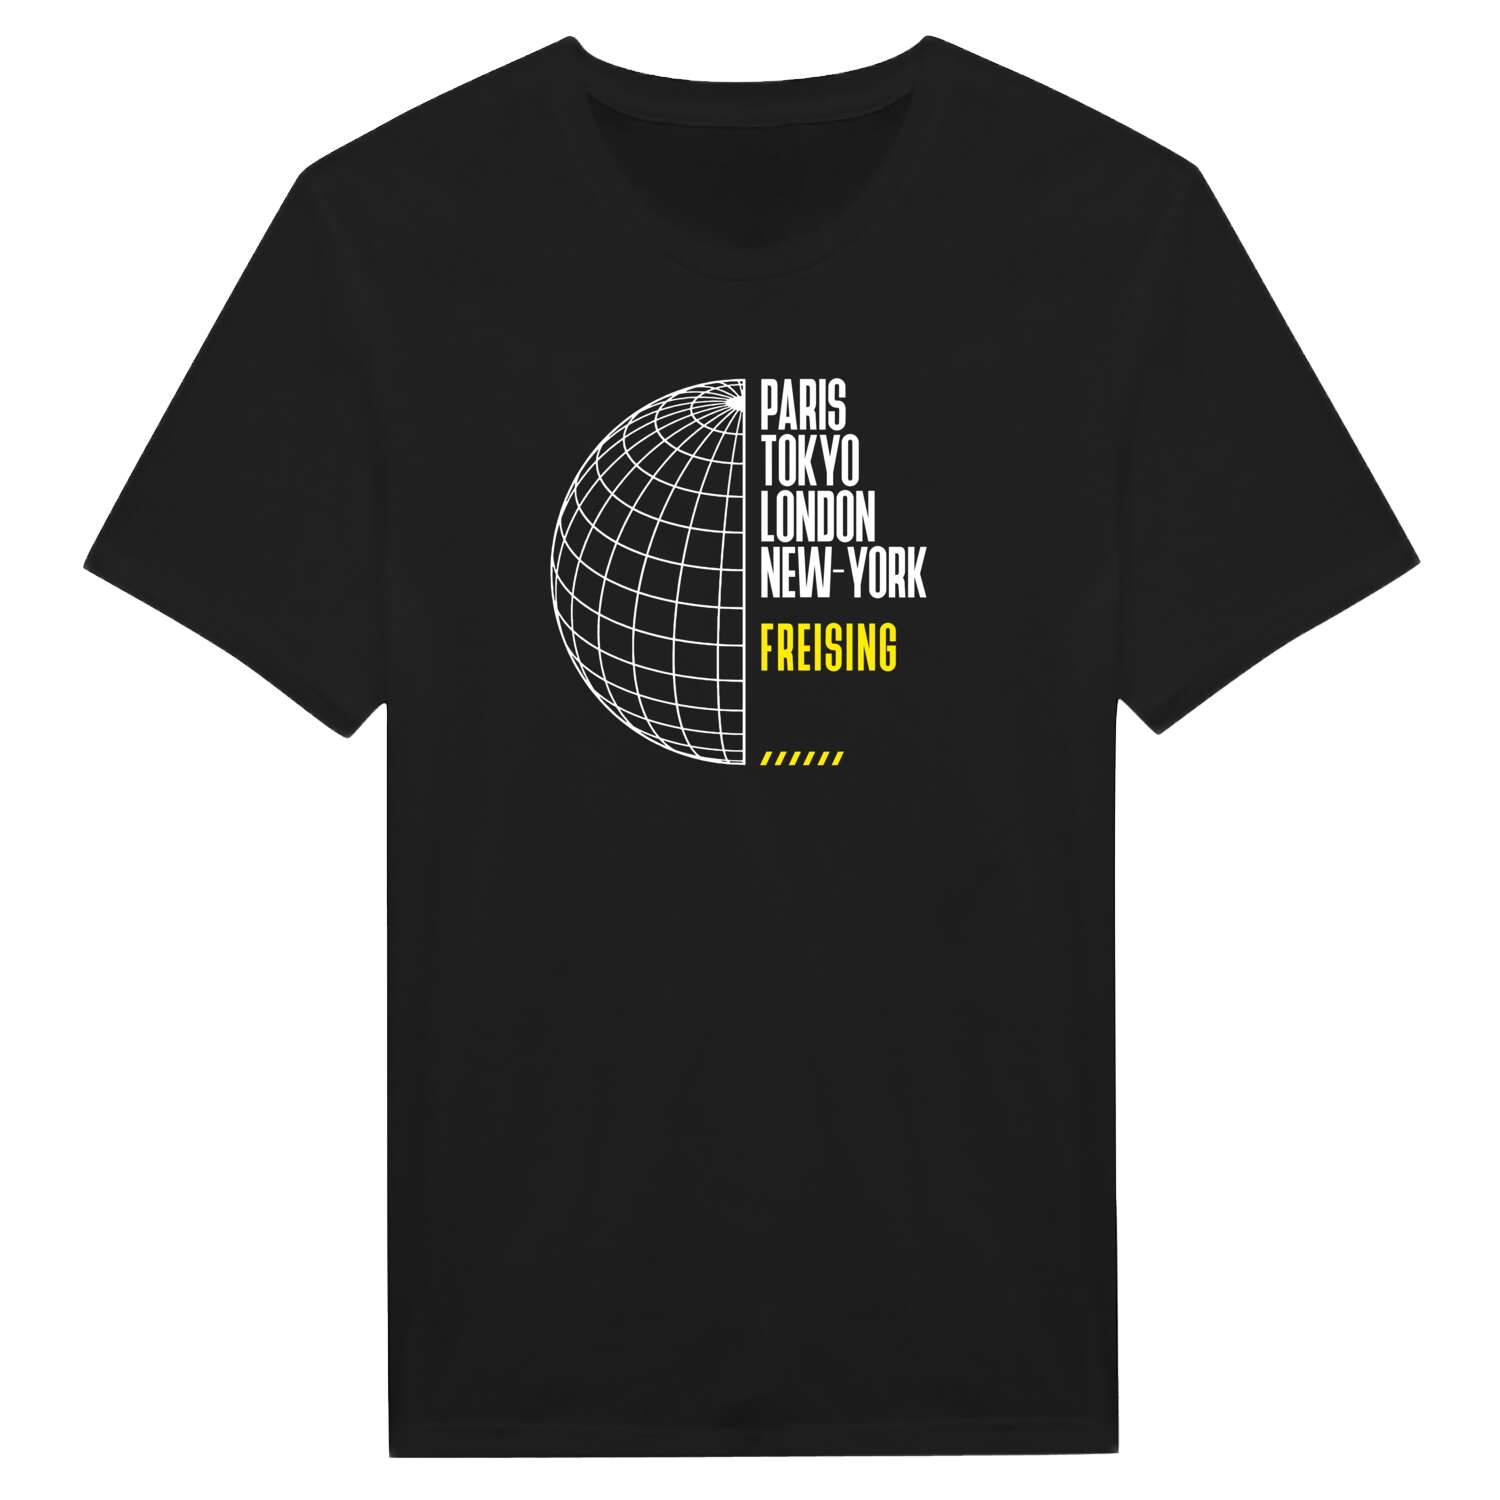 Freising T-Shirt »Paris Tokyo London«